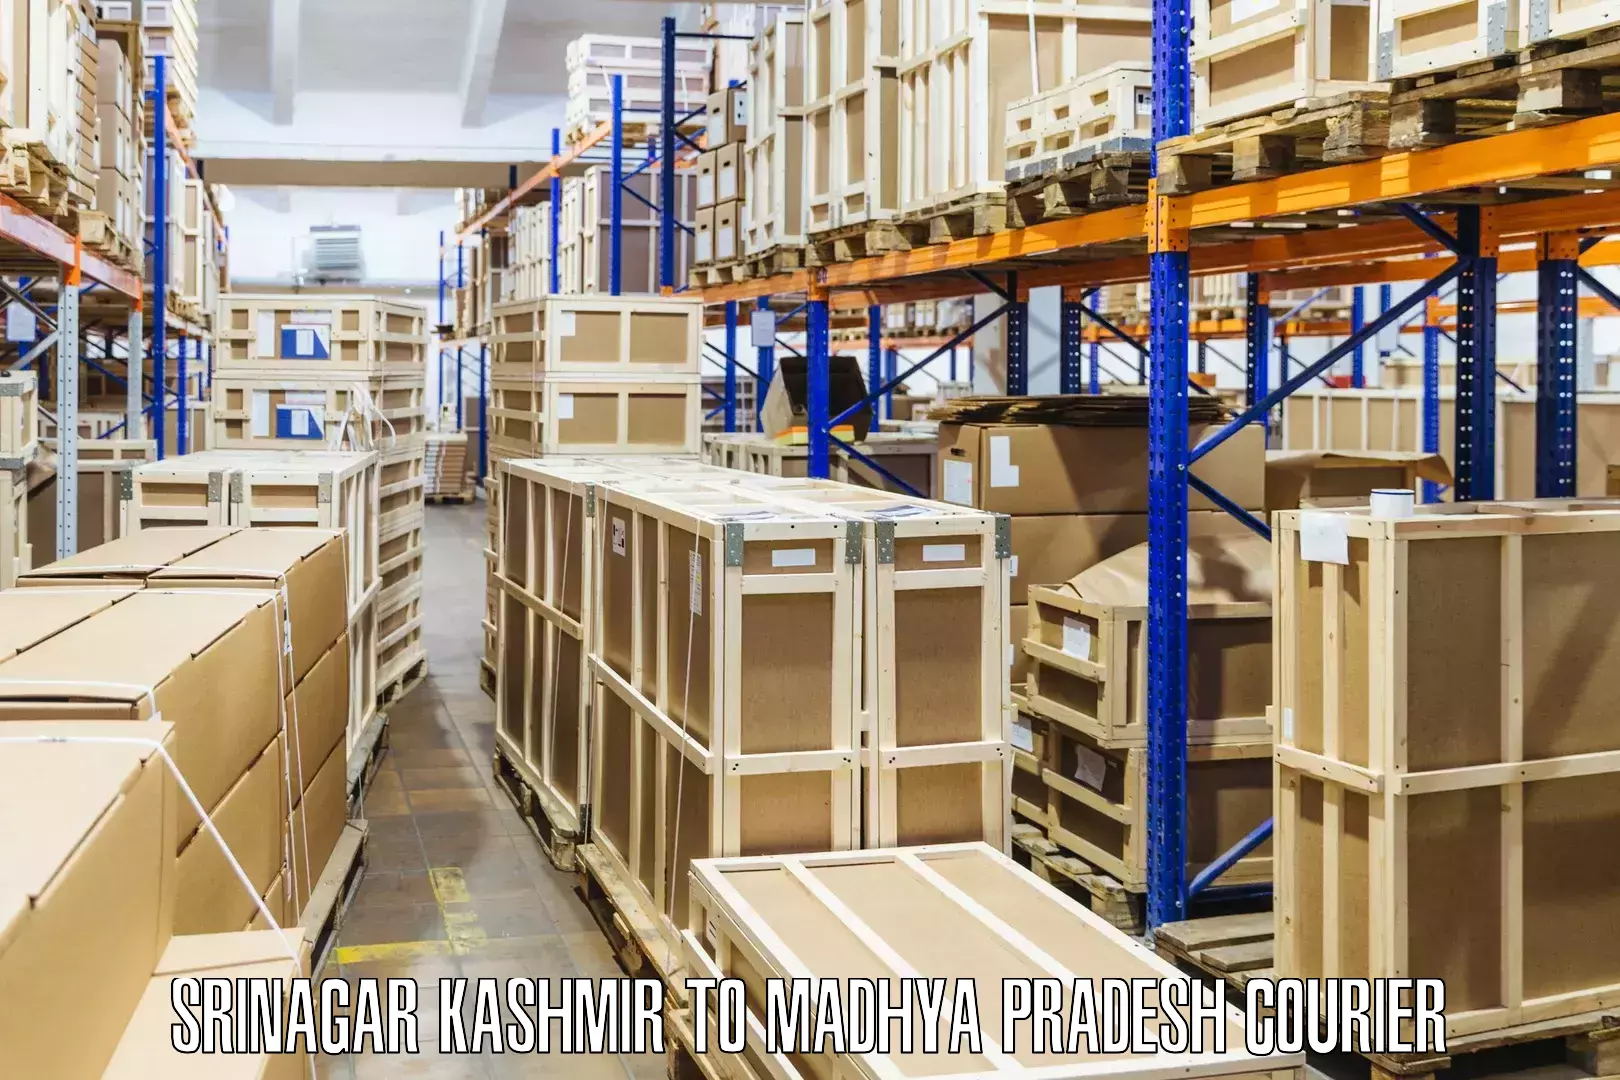 User-friendly delivery service Srinagar Kashmir to Jaitwara